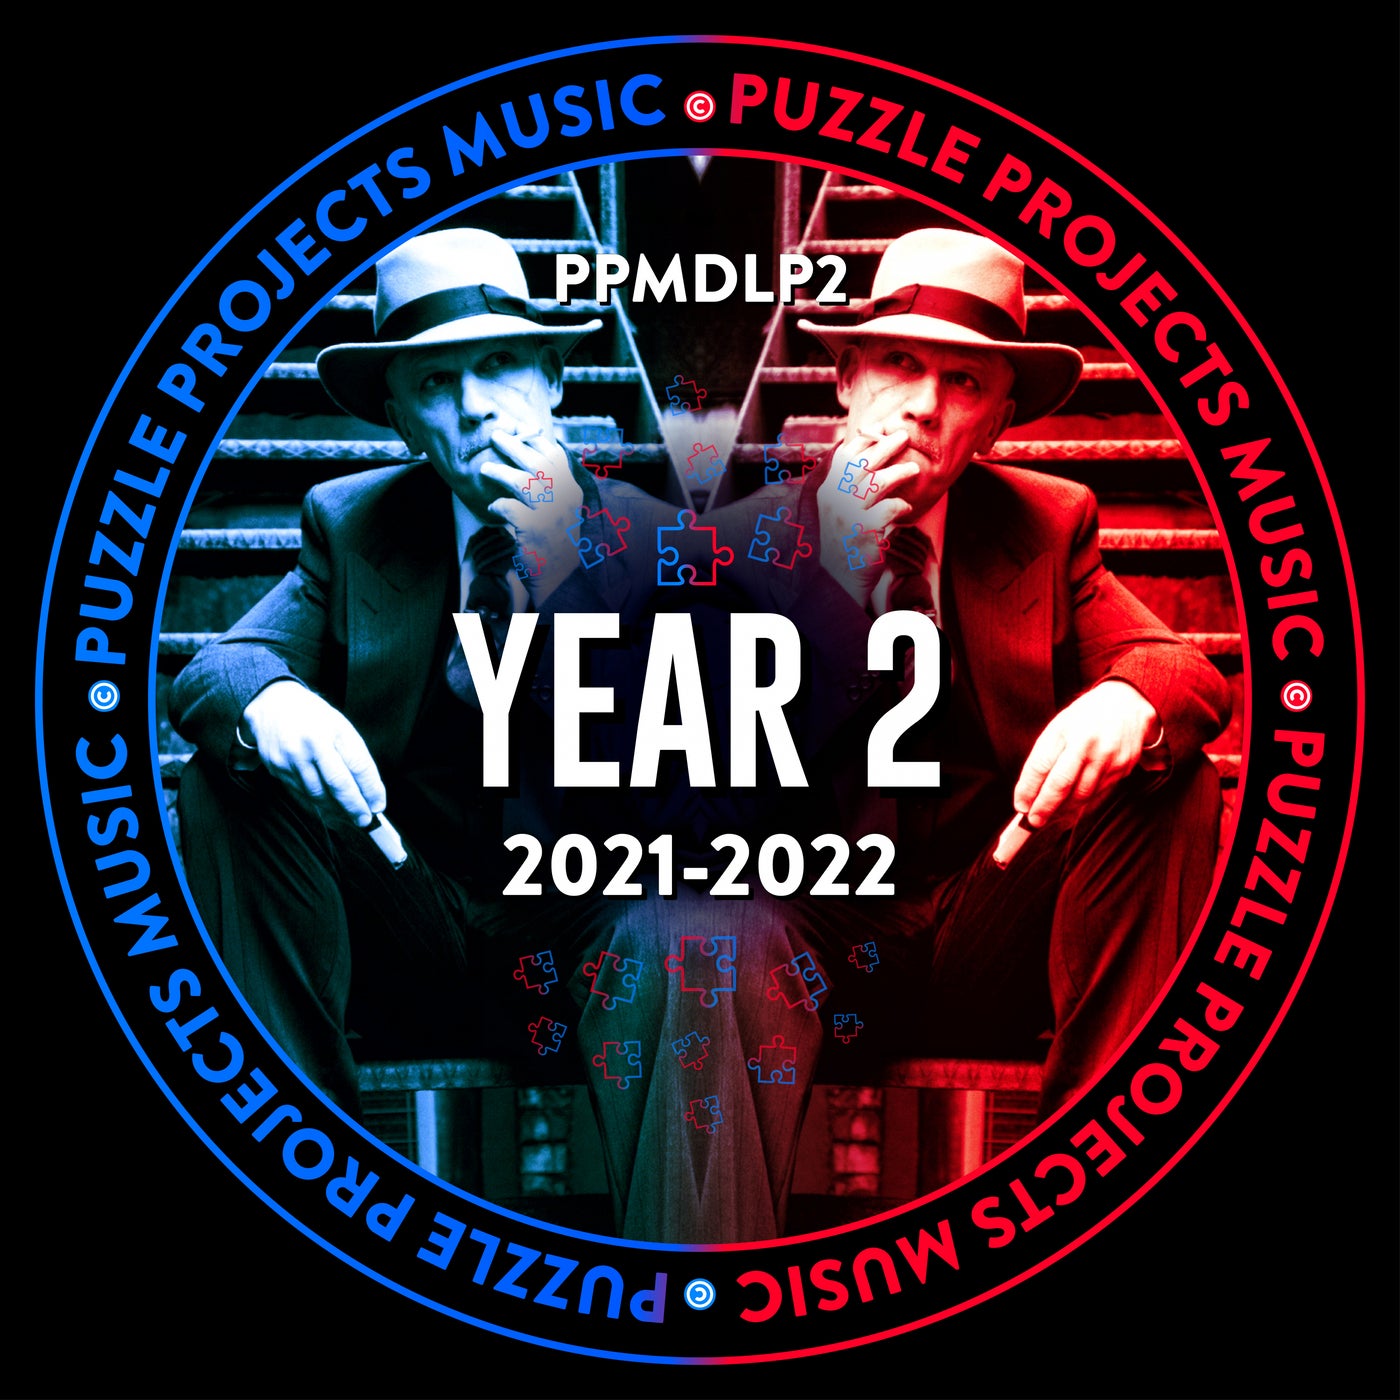 Year 2 - PuzzleProjectsMusic (2021-2022)